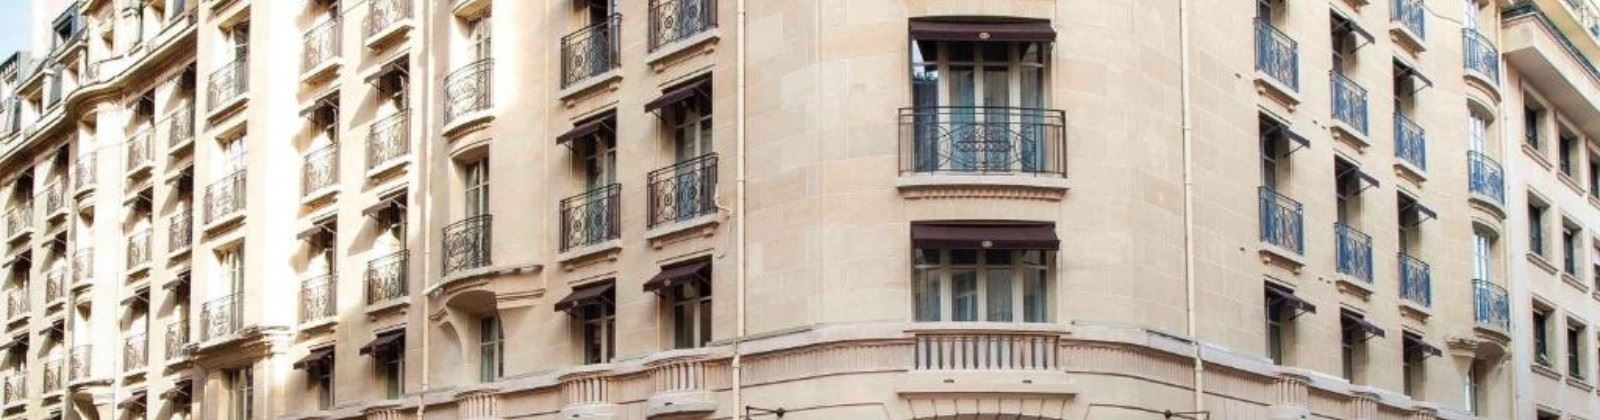 OLEVENE image - sofitel-paris-arc-de-triomphe-olevene-restaurant-hotel-meeting-